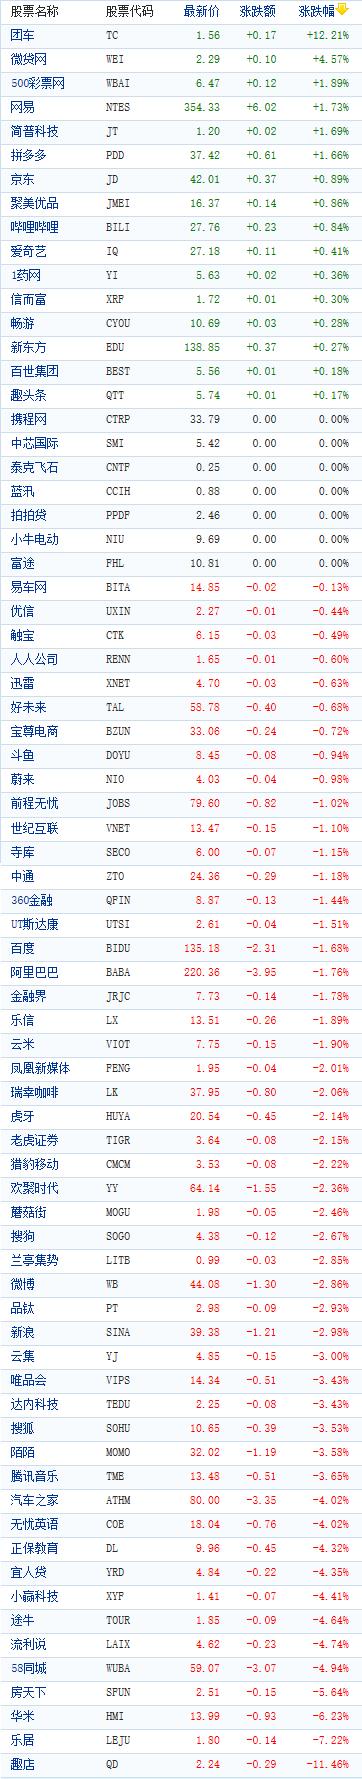 中国概念股周四收盘多数下跌 团车逆势大涨逾12%